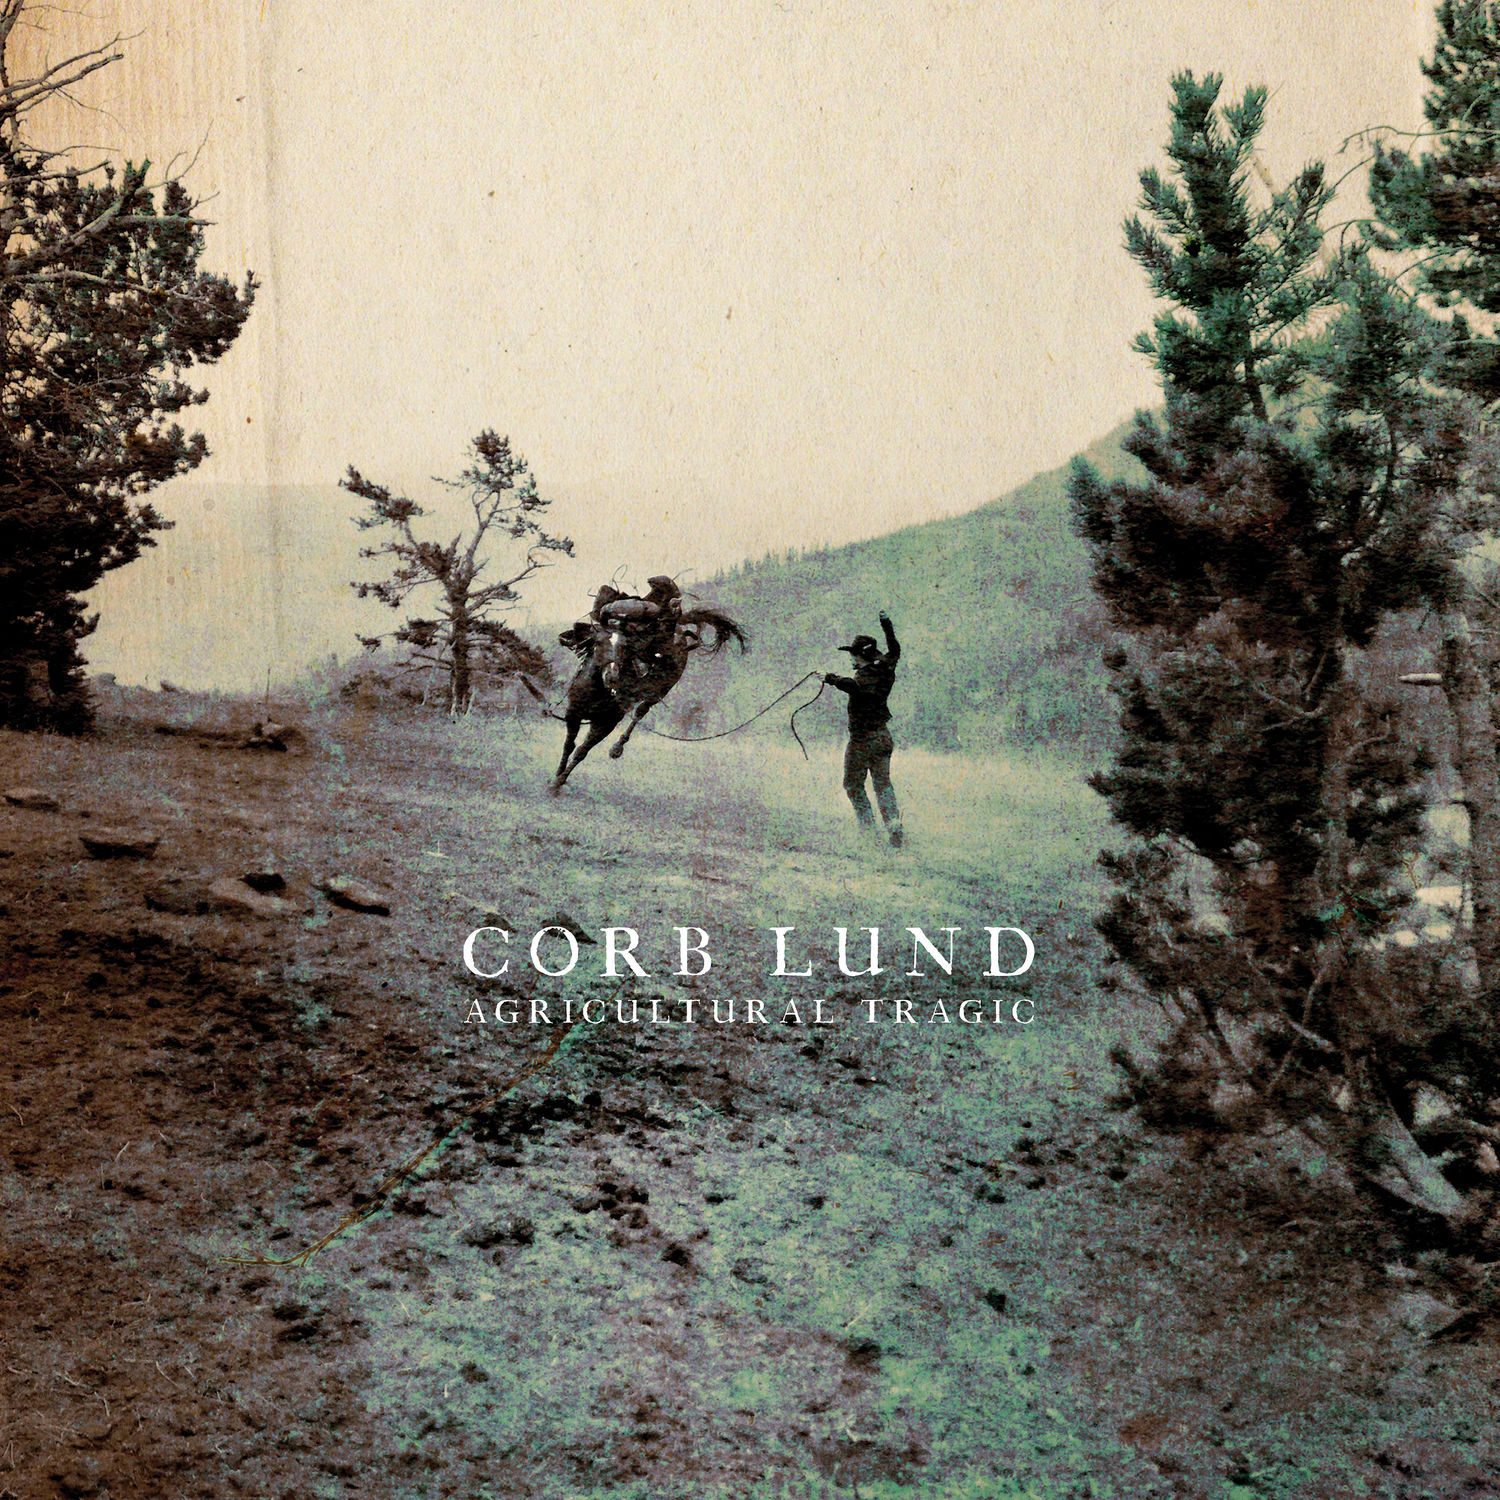 Corb Lund - Agricultural Tragic (2020) [FLAC 24bit/48kHz]